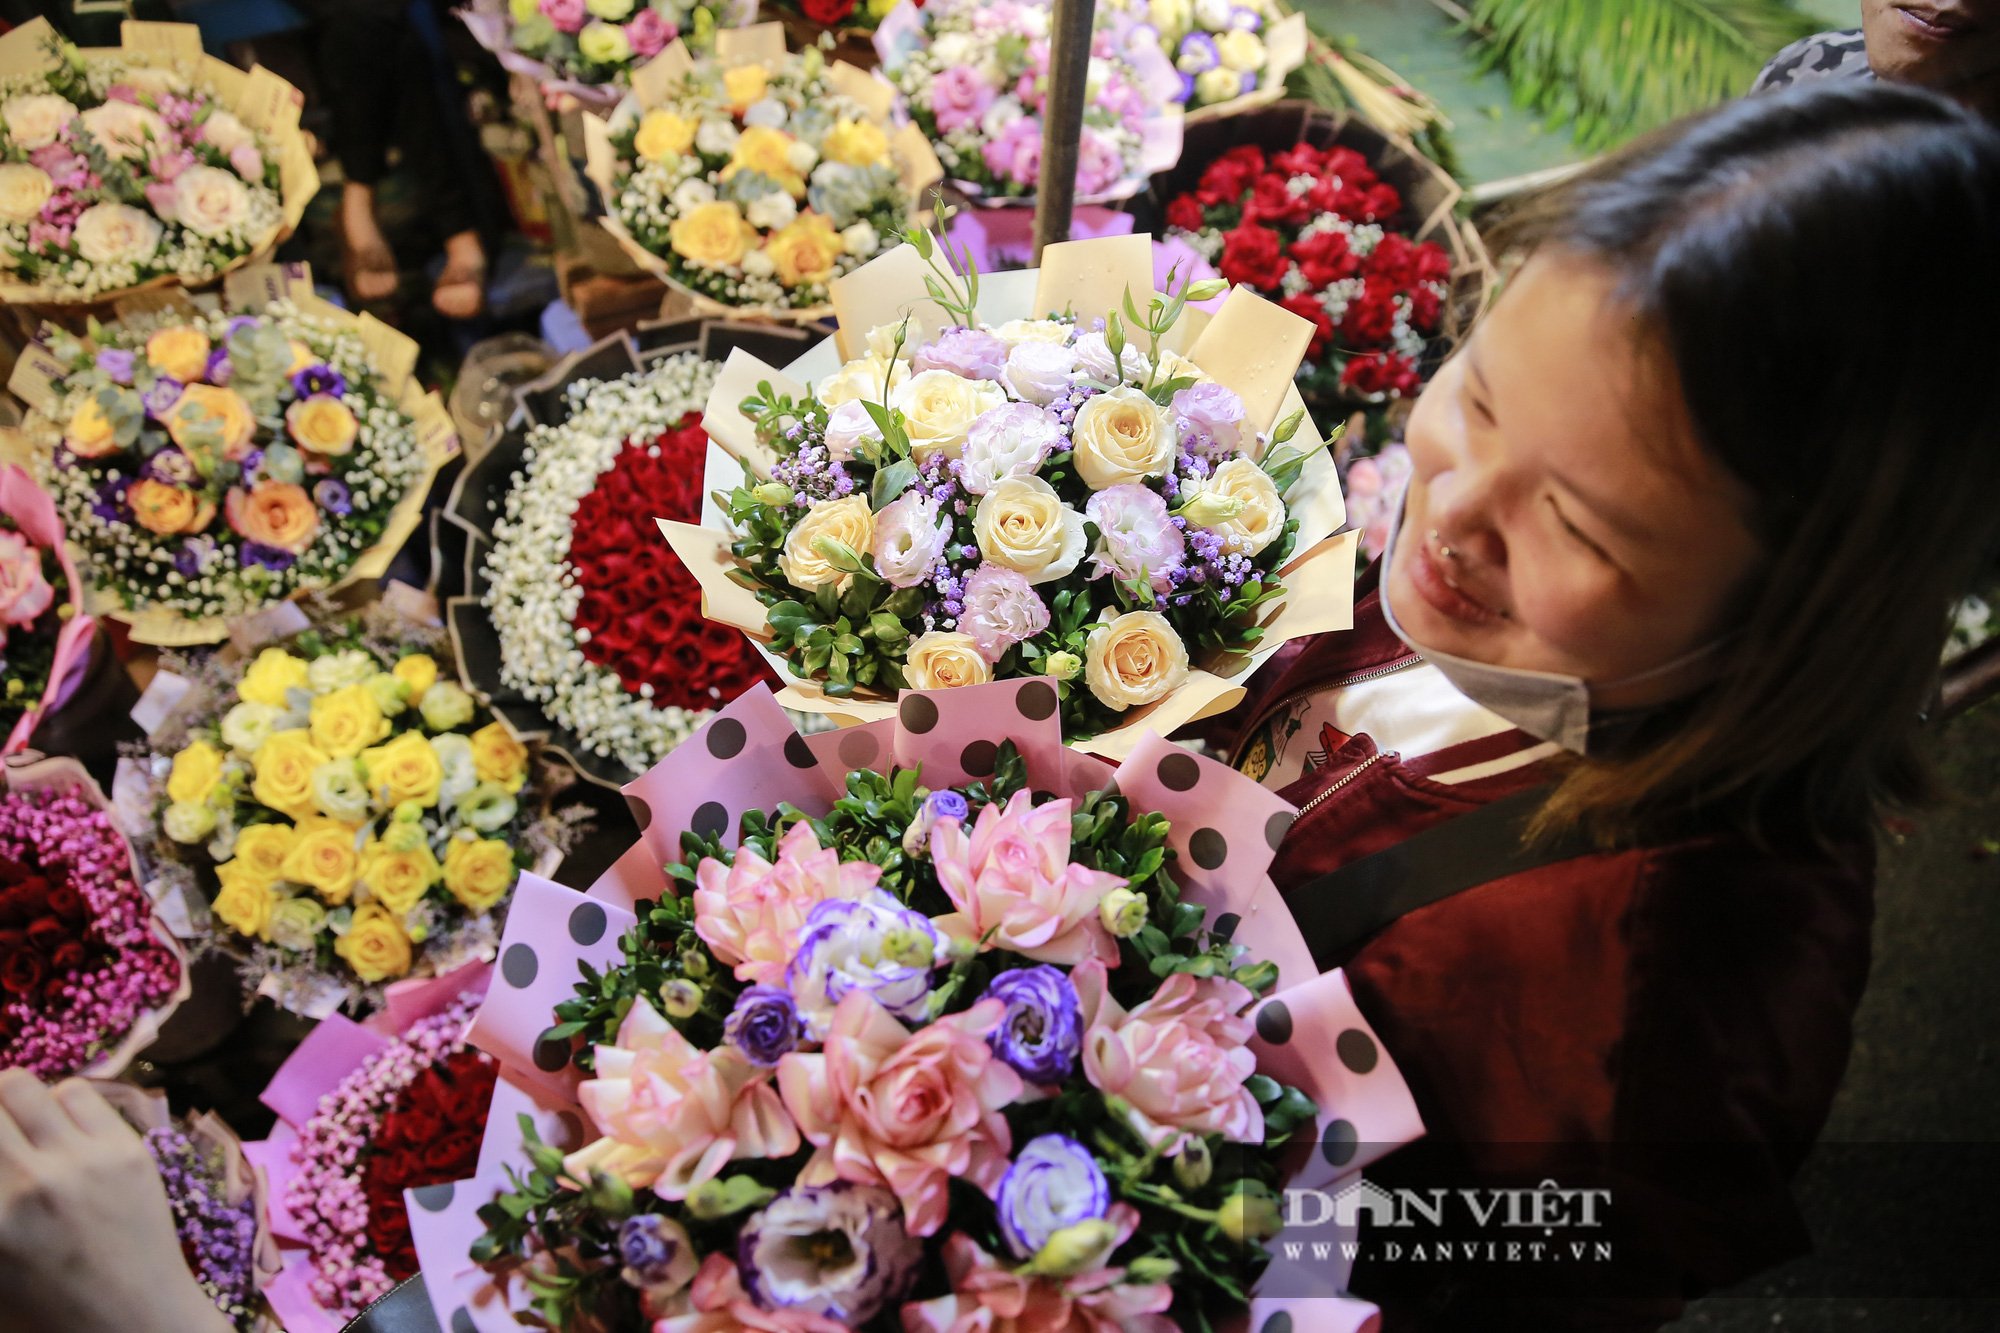 Chợ hoa Quảng An nhộn nhịp trước ngày 20/11 - Ảnh 4.